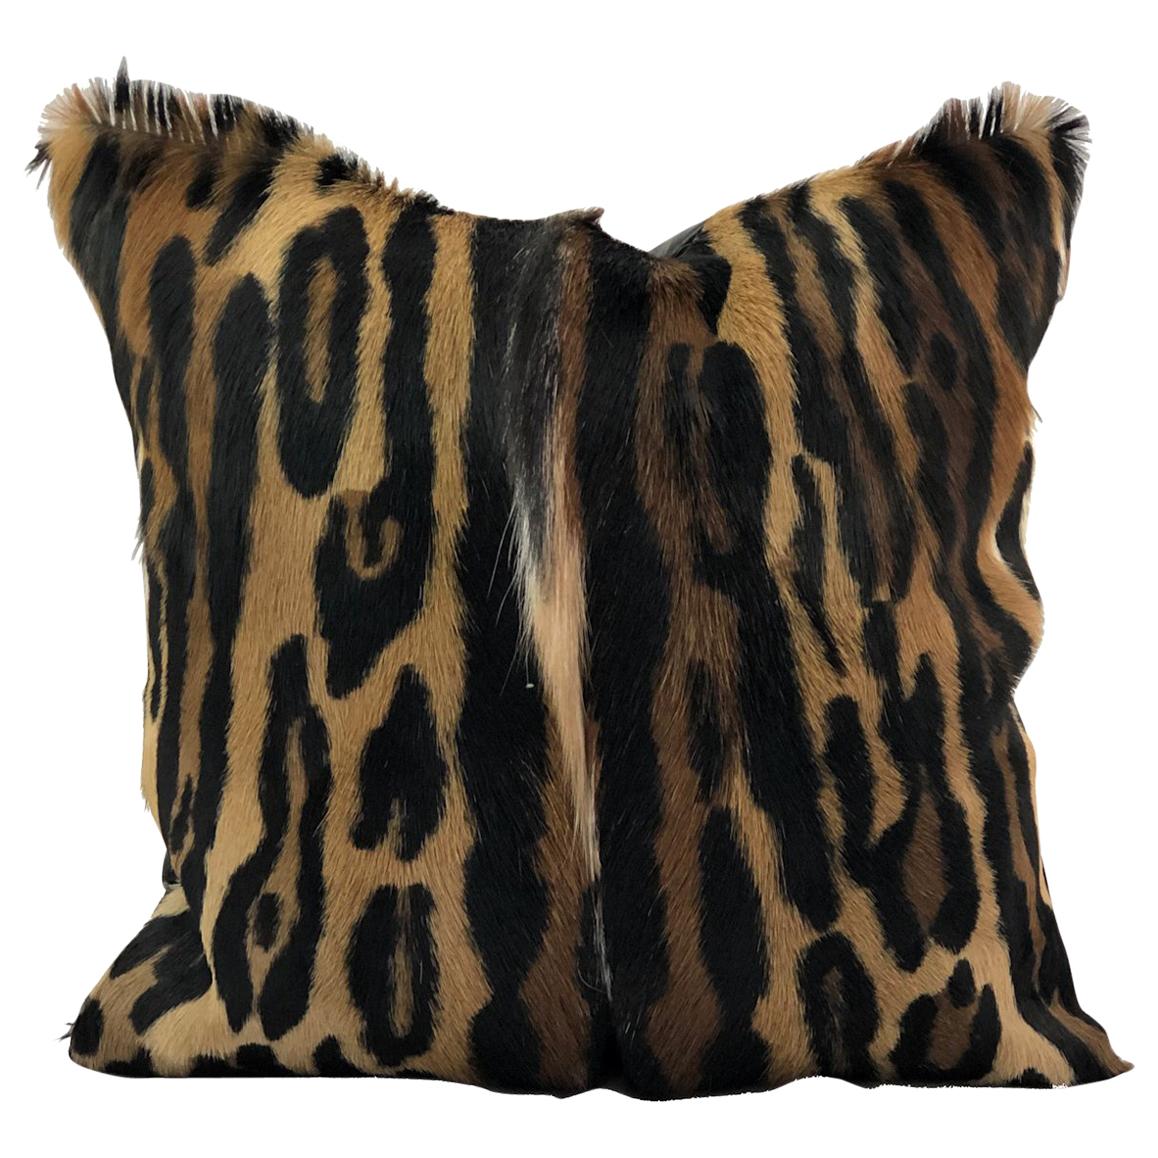 Es ist die Saison der wilden und exotischen Leopardenmuster, also befreien Sie Ihr Interieur mit diesem glamourösen Leopardenfell-Kissen. Ein wunderschön gestalteter Druck, der im Siebdruckverfahren auf ein afrikanisches Springbockfell gedruckt